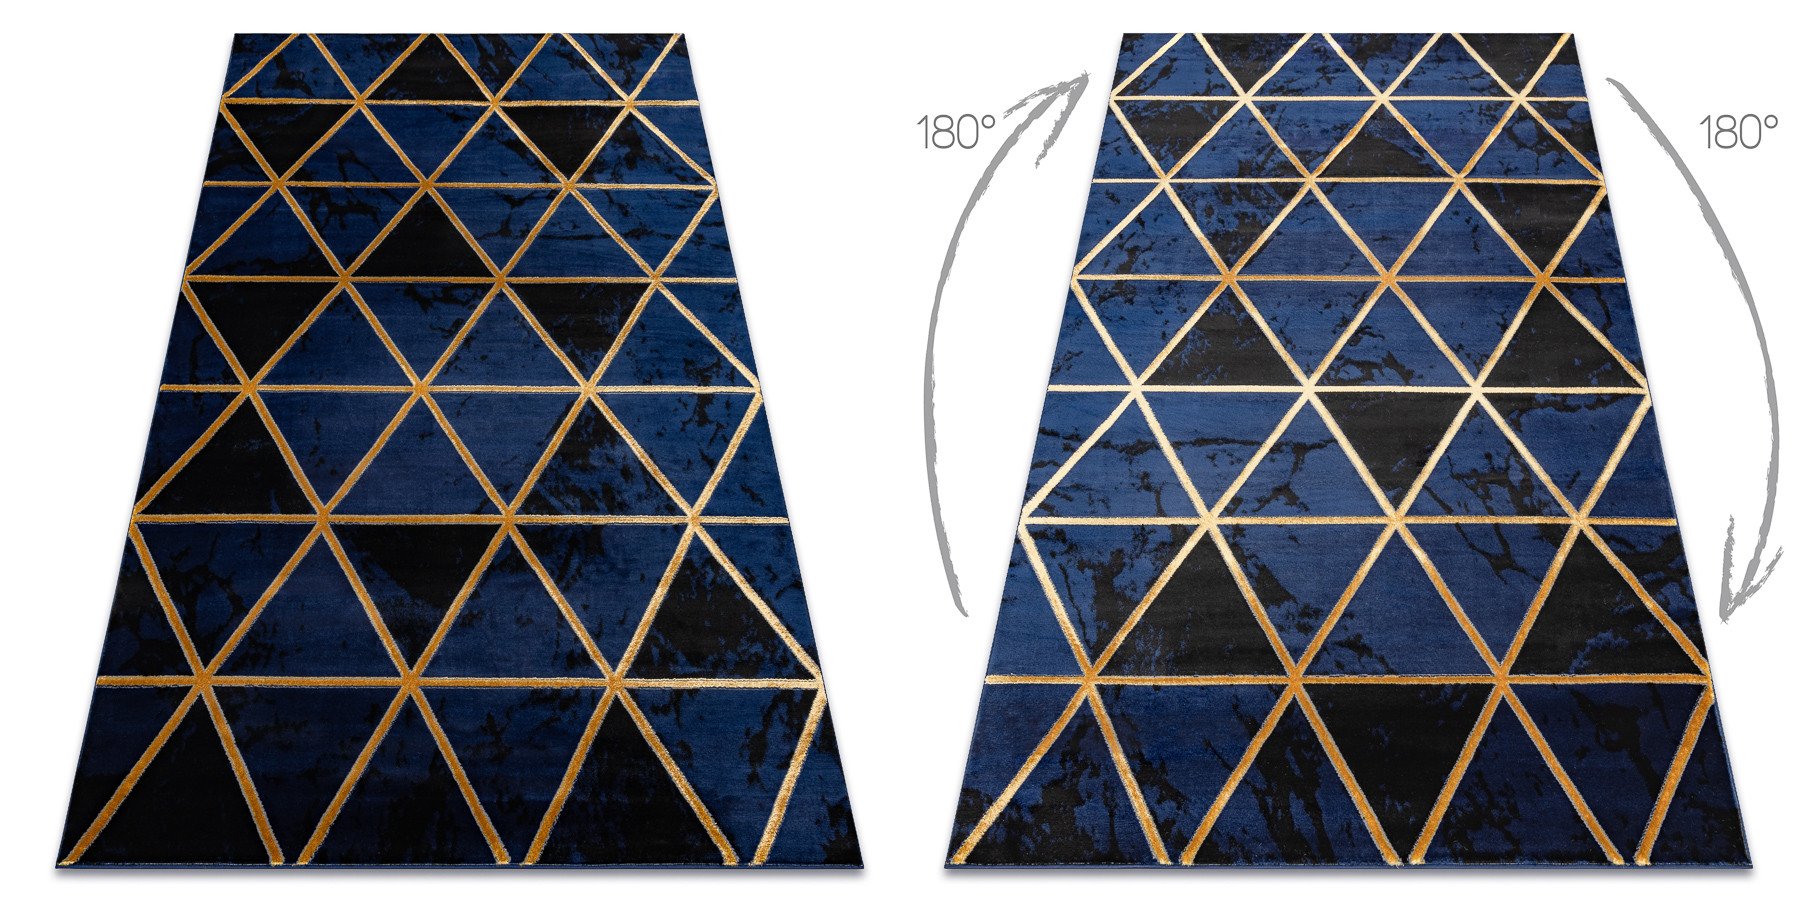 Koberec EMERALD exkluzivní 1020 glamour, styl marmur, trojúhelníky granátový / zlatý